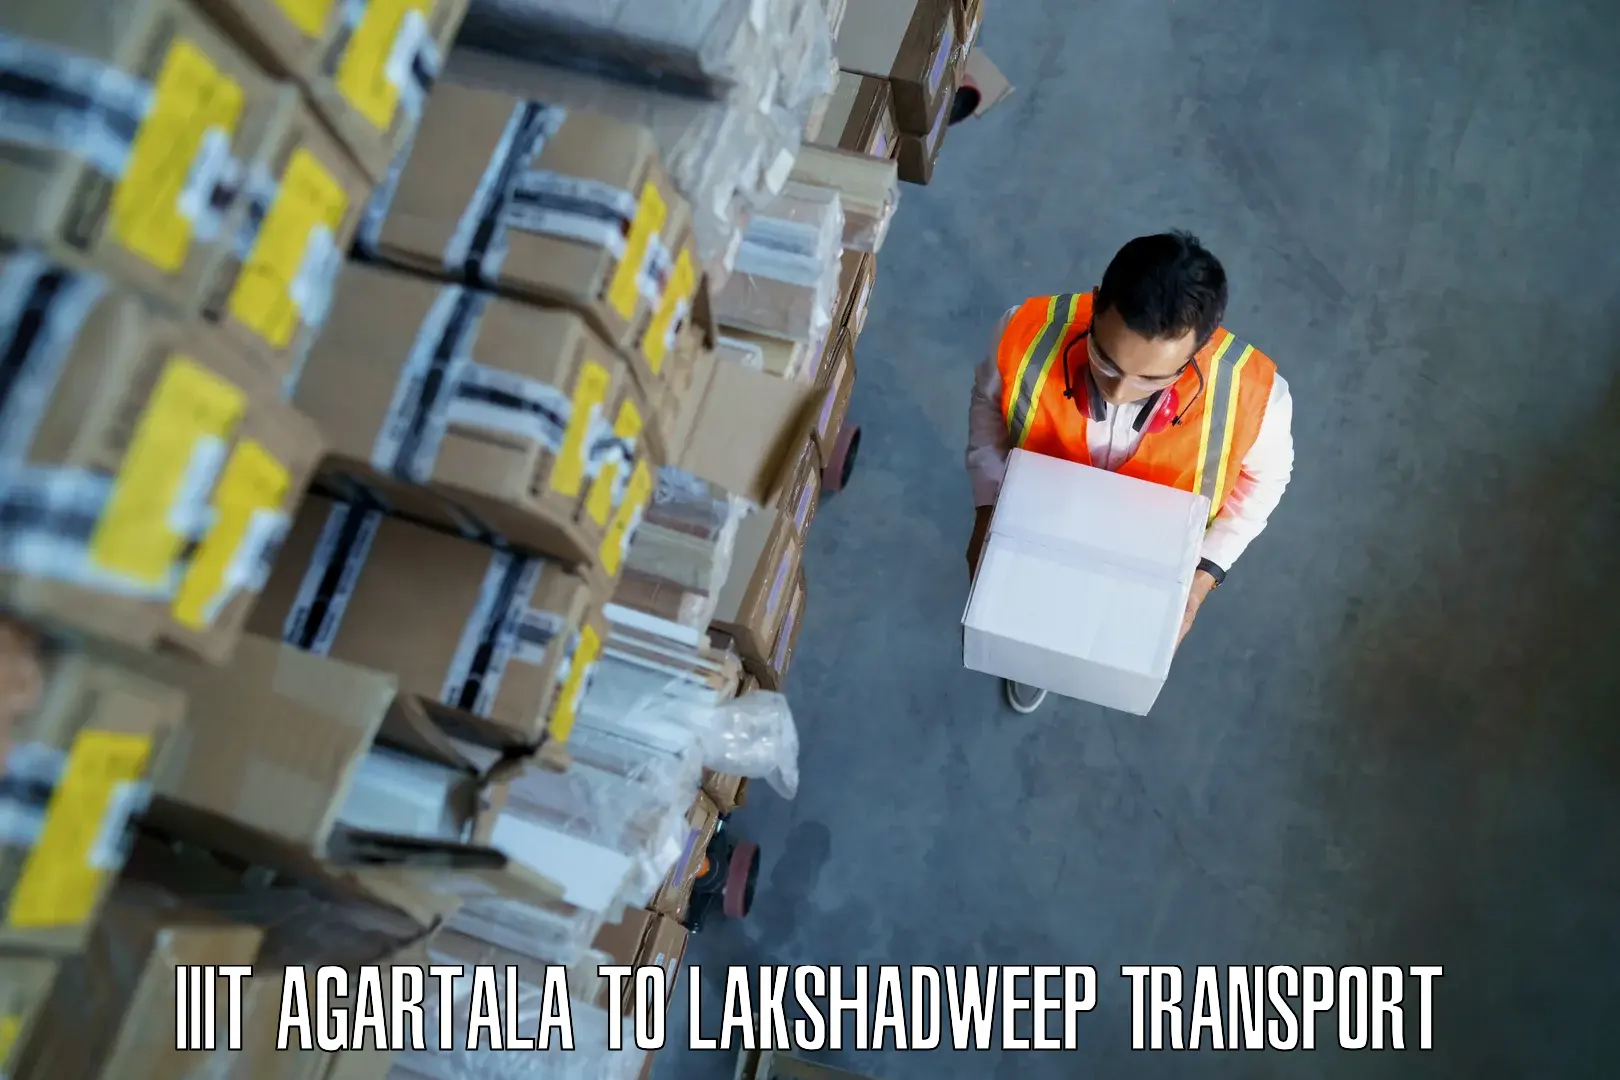 Bike shipping service IIIT Agartala to Lakshadweep